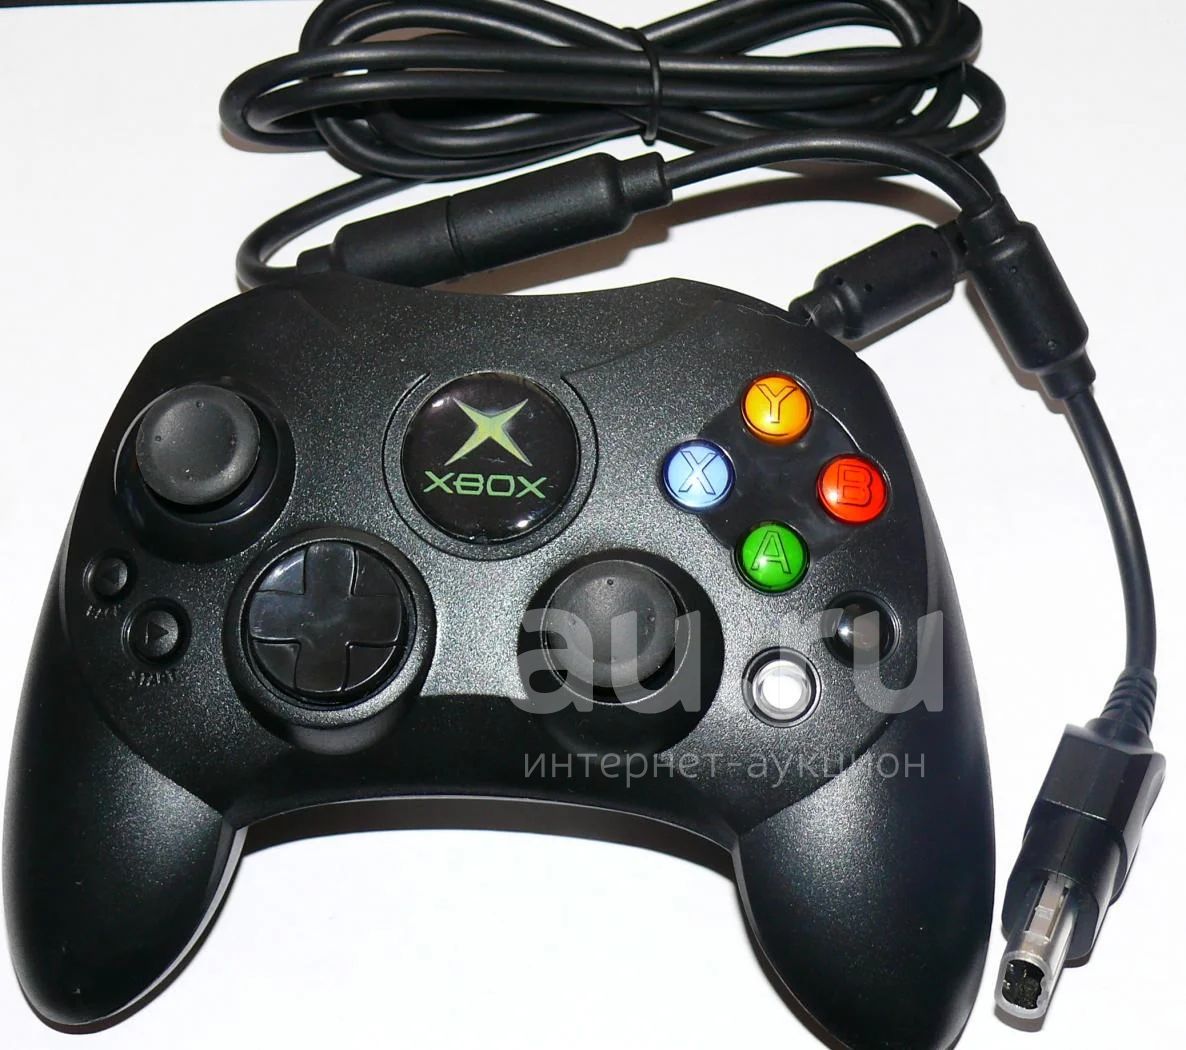 Джойстик xbox оригинал. Хбокс Original джойстик. Геймпад Xbox Original Duke. Original Xbox джойстик беспроводной. BIGBEN interactive джойстик Xbox Original.